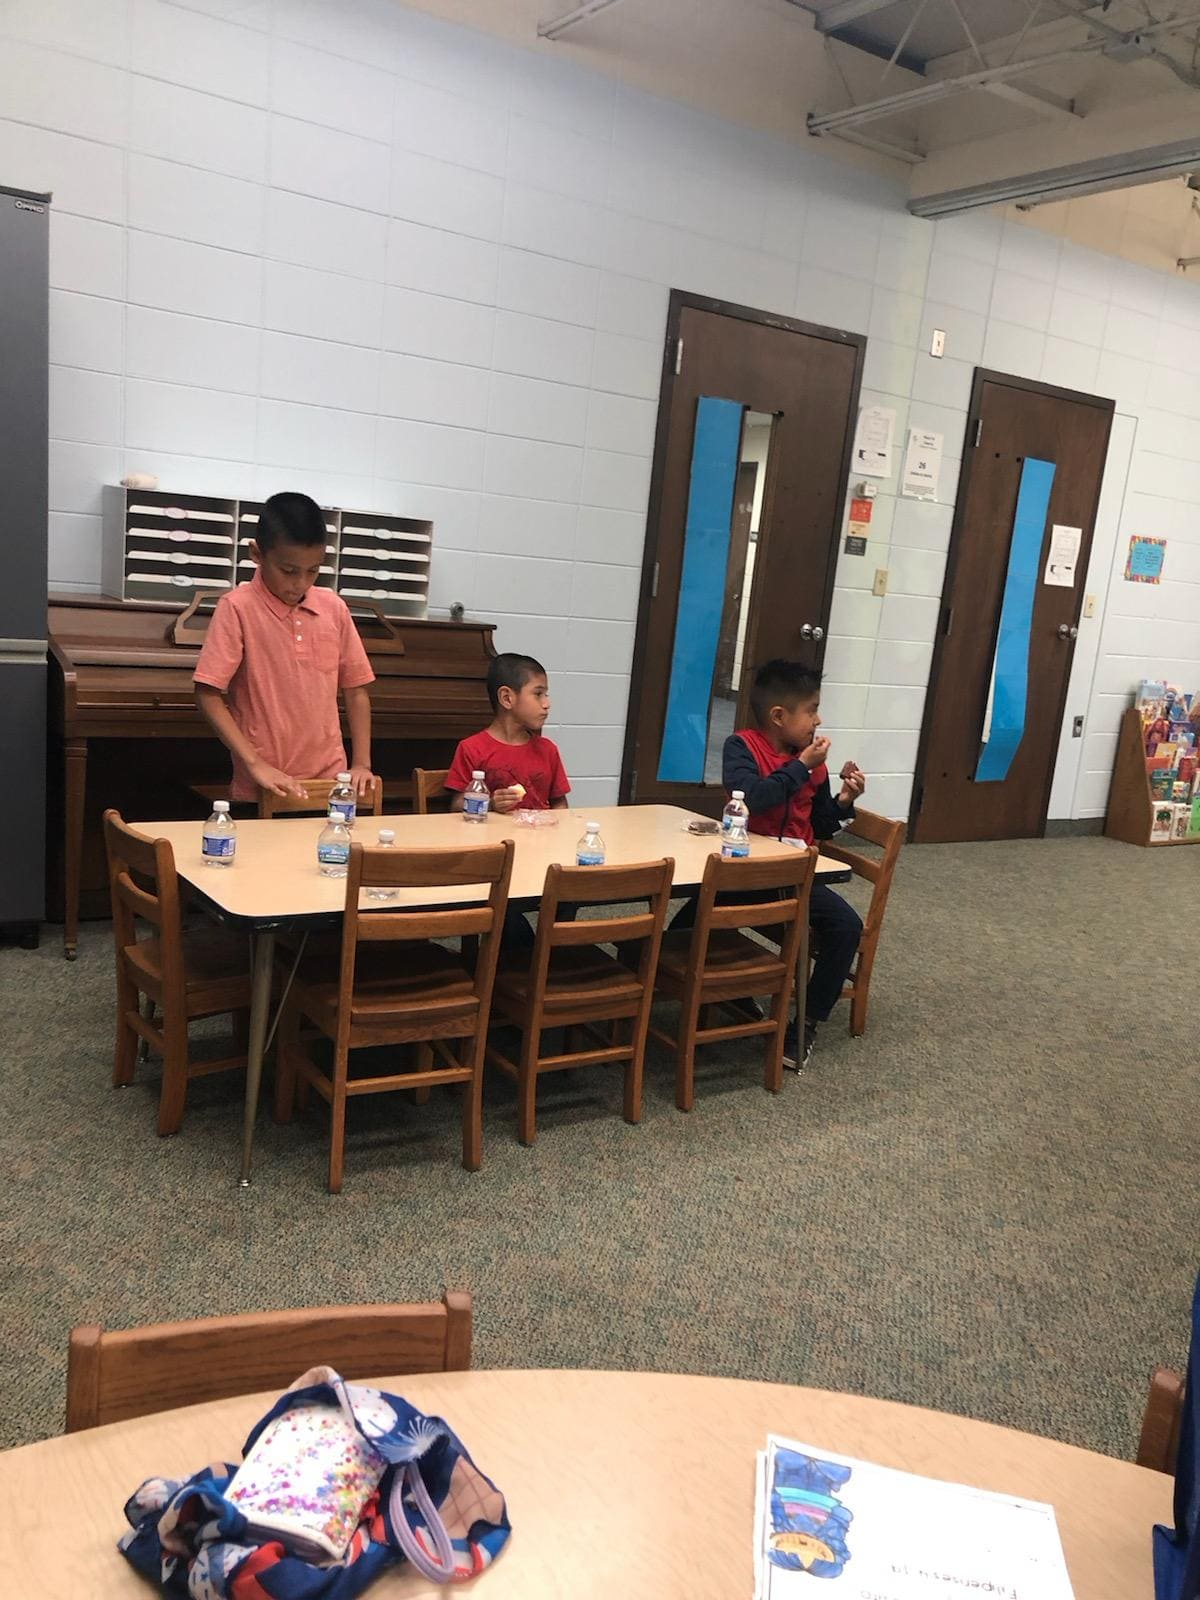 Niños sentados a la mesa.